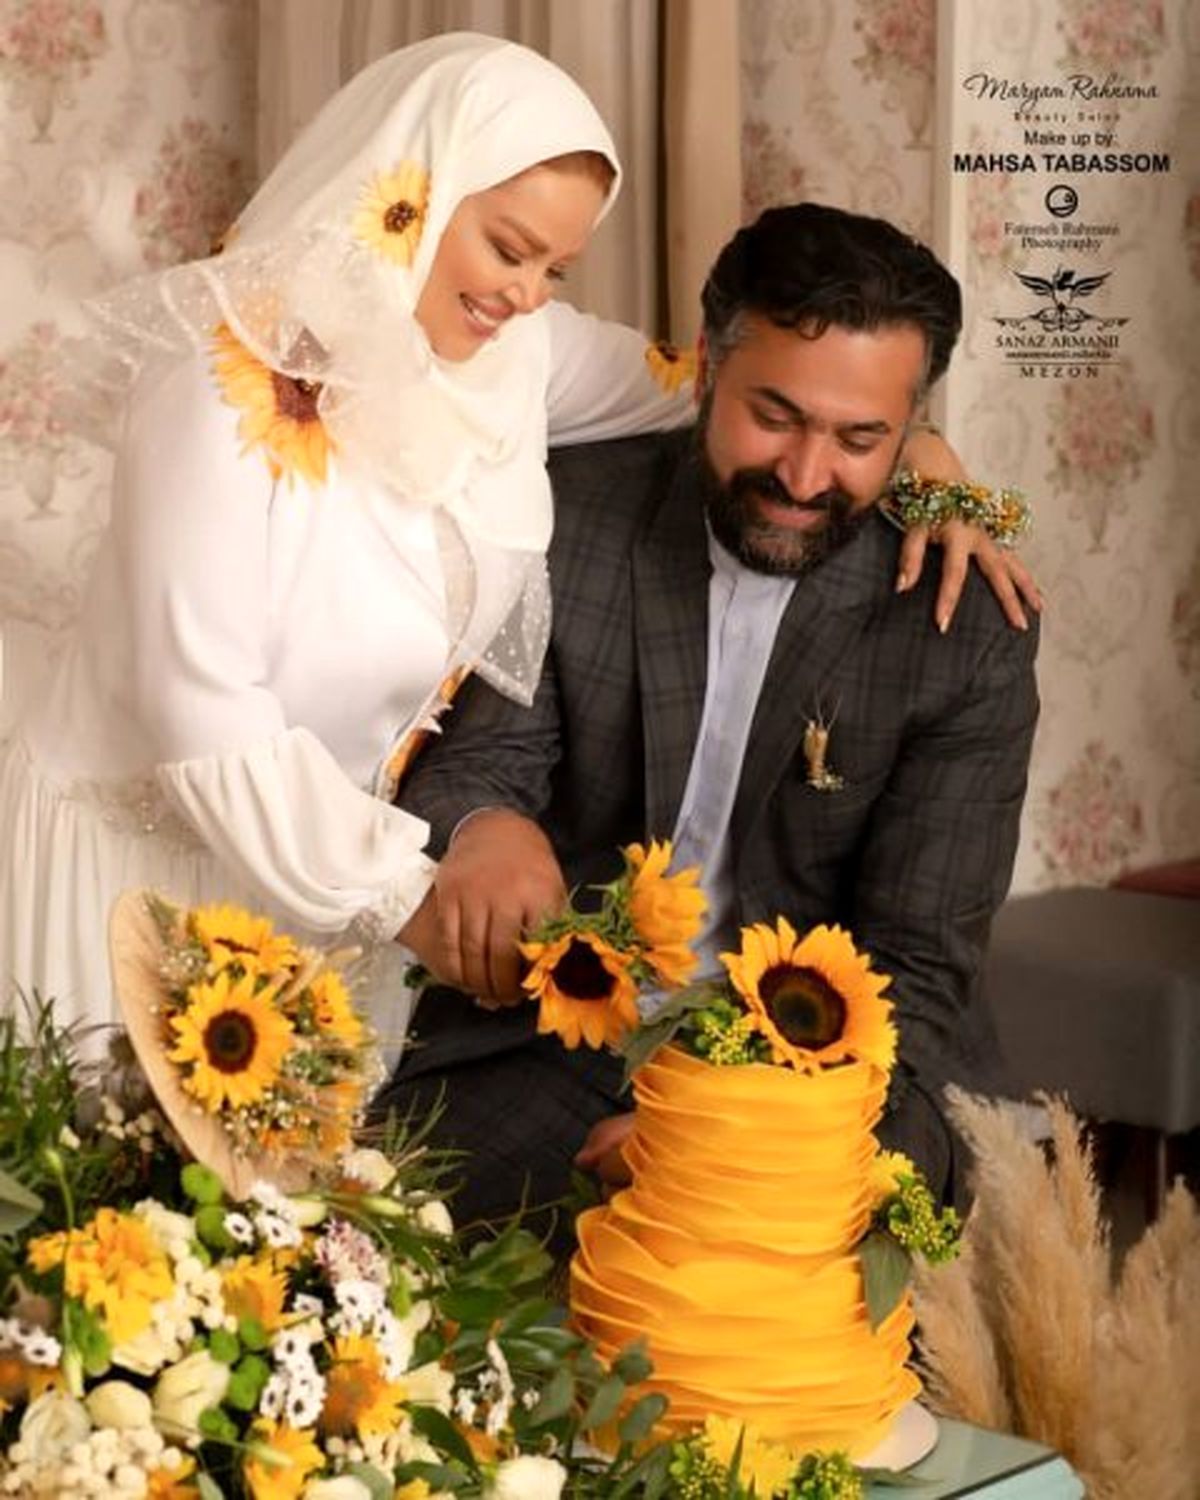 جشن گرفتن بهاره رهنما به مناسبت سالگرد ازدواج در خلوت حاجی! + عکس